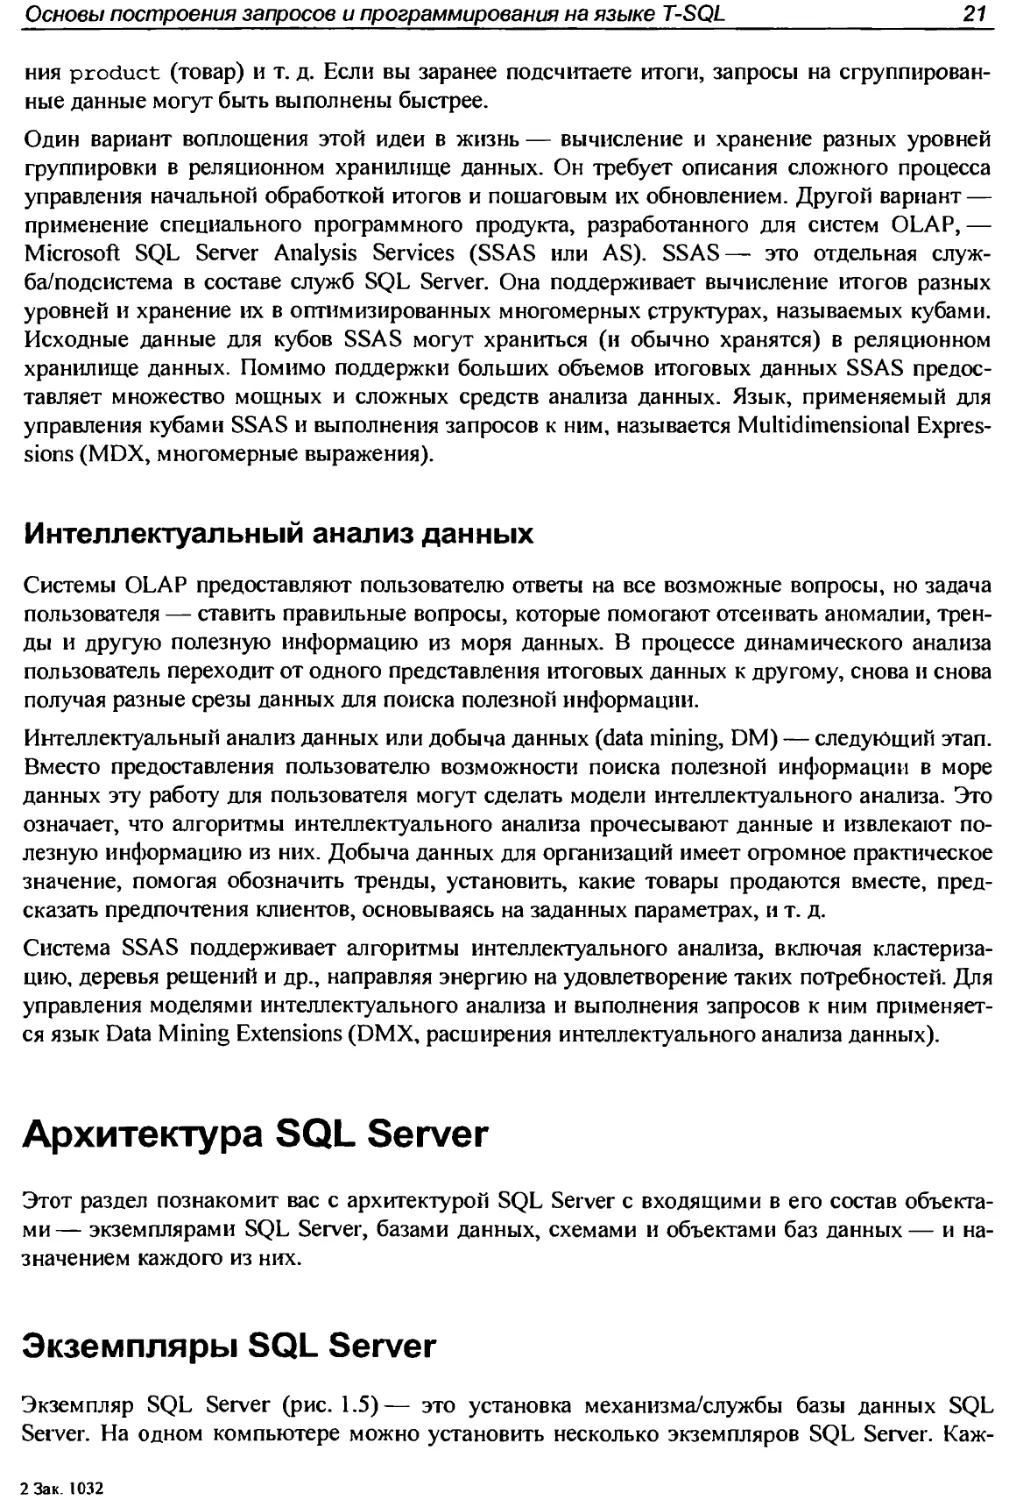 Архитектура SQL Server